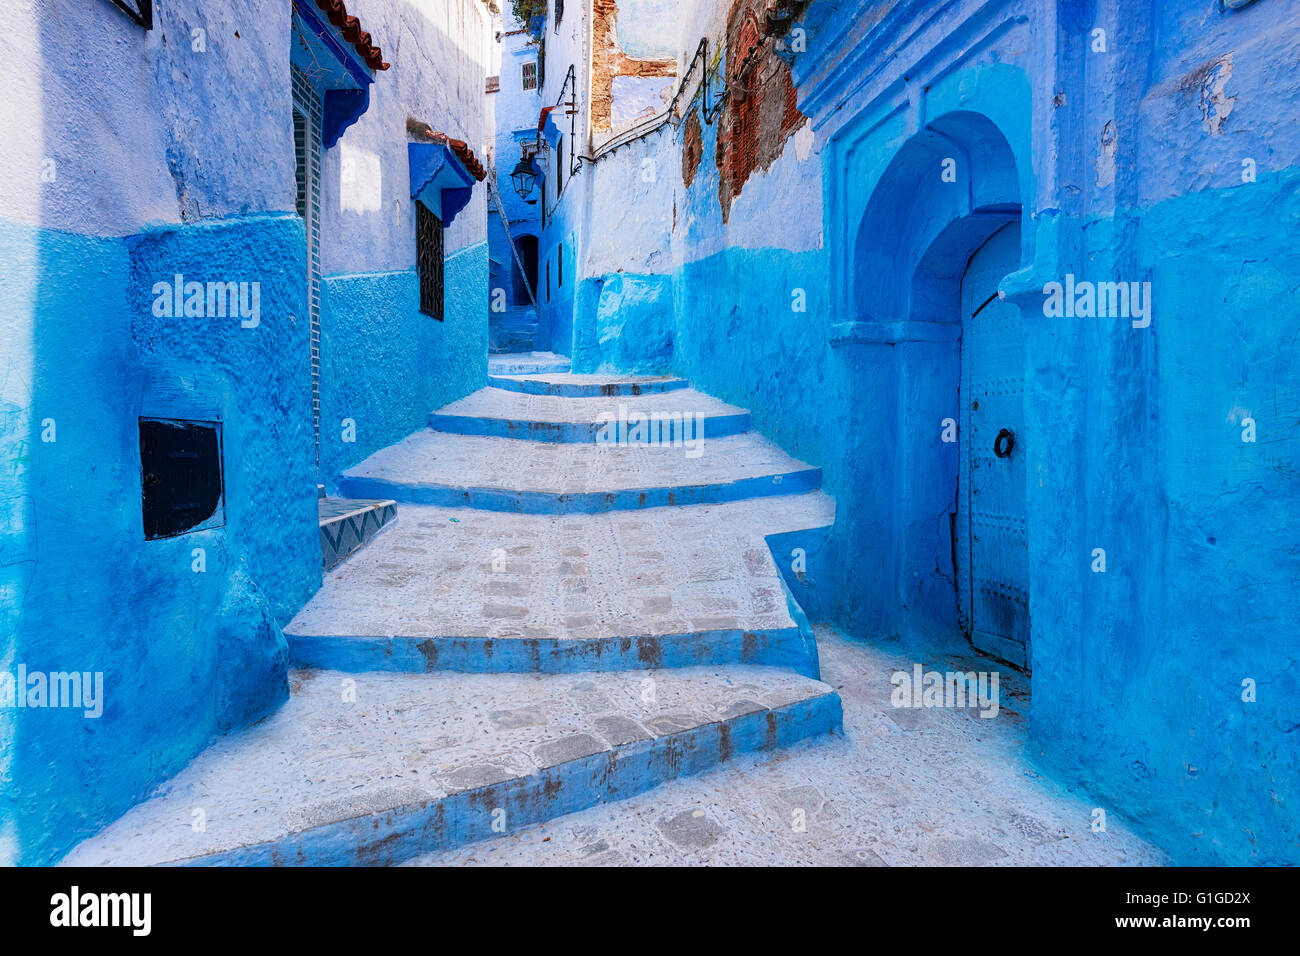 Vue d'une rue dans la ville de Chefchaouen au Maroc Banque D'Images